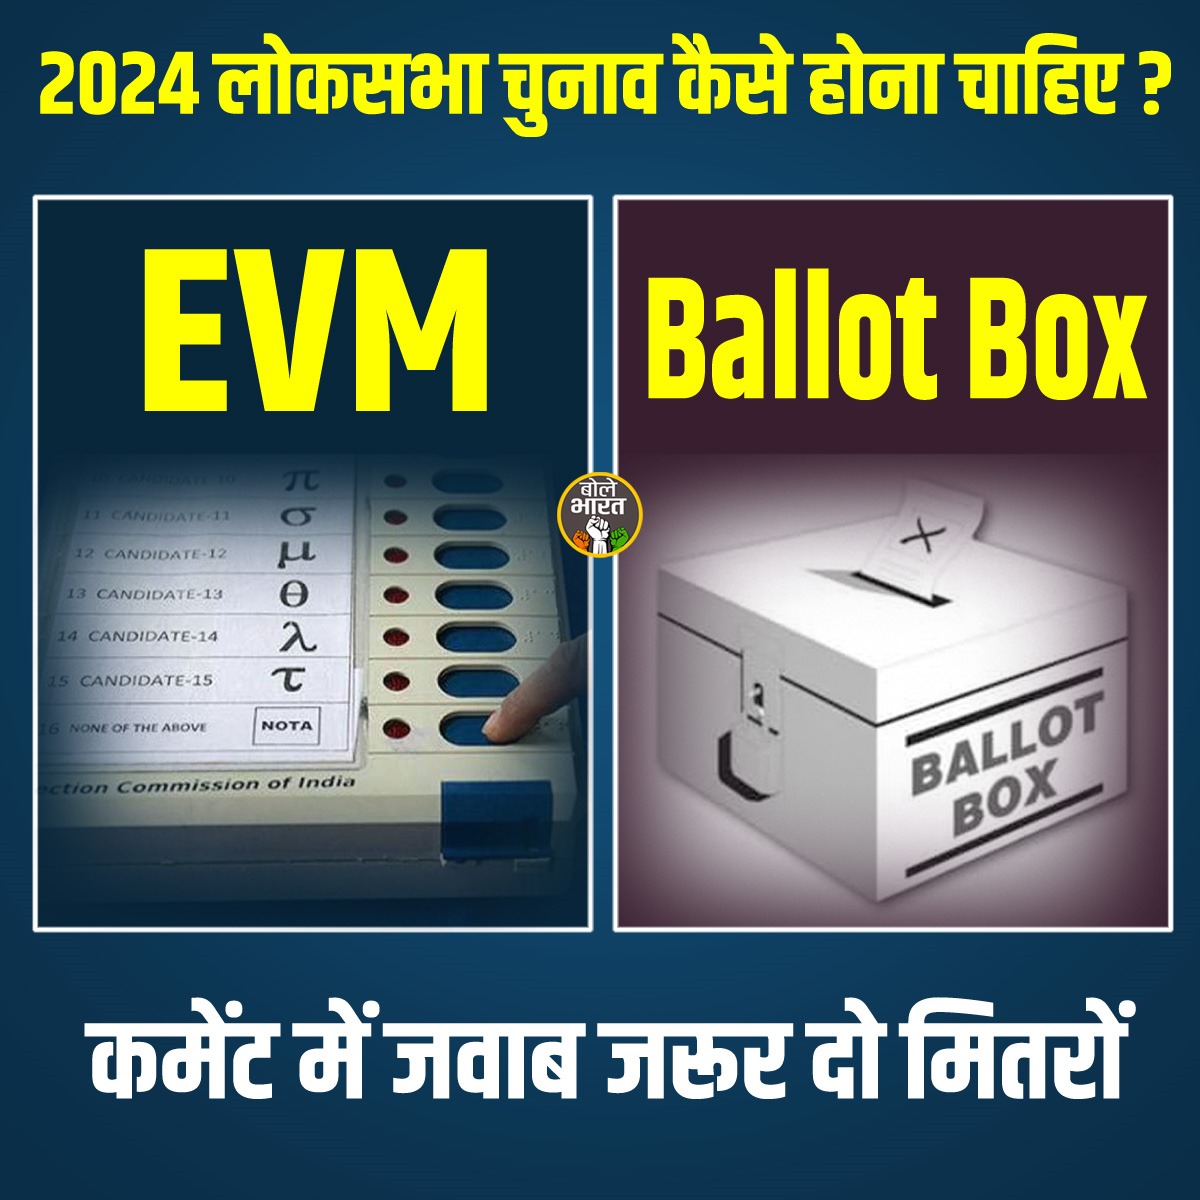 चुनाव अब कैसे होना चाहिए? #Election #LokSabha #EVM #Ballot